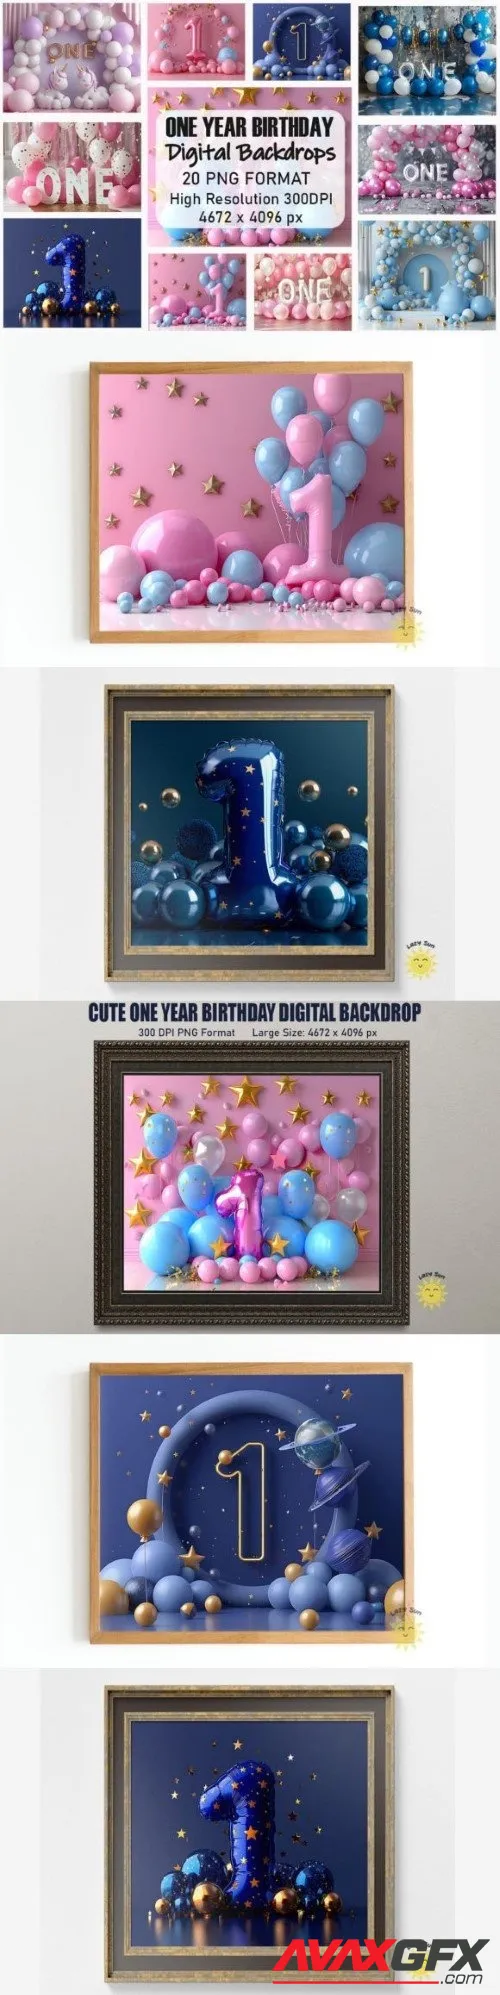 Cute One Year Birthday Digital Backdrops